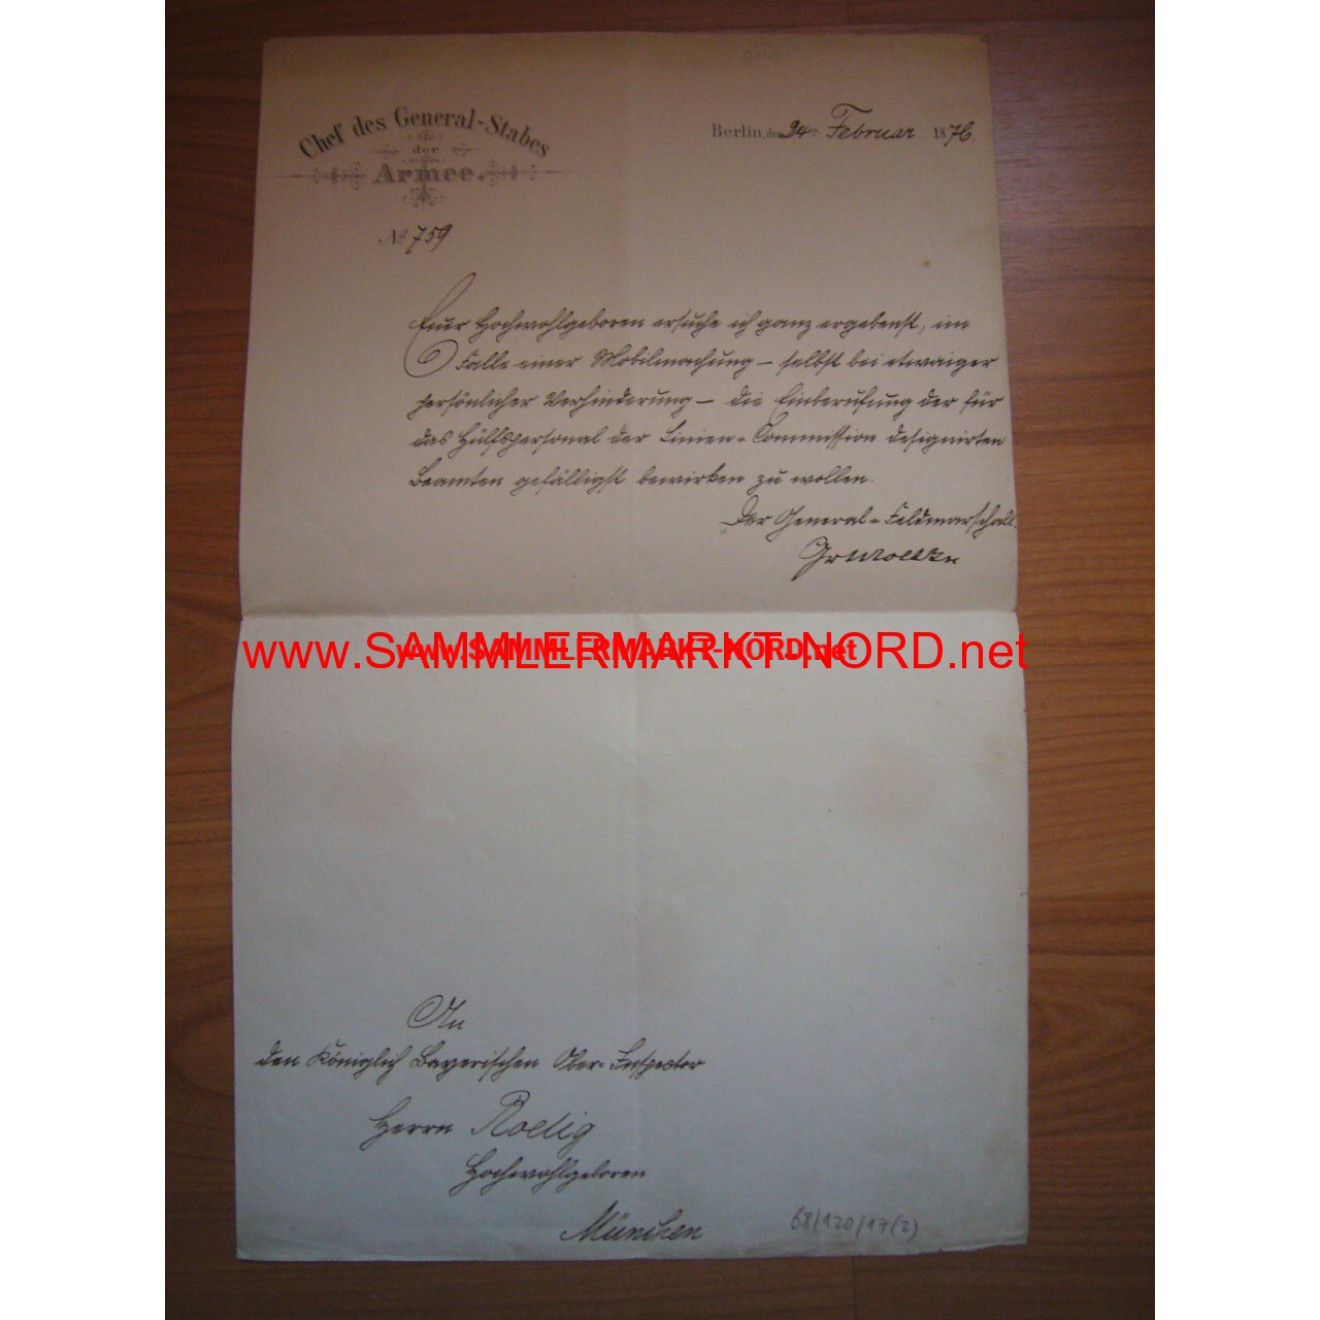 Field Marshal HELMUT GRAF VON MOLTKE - Autograph